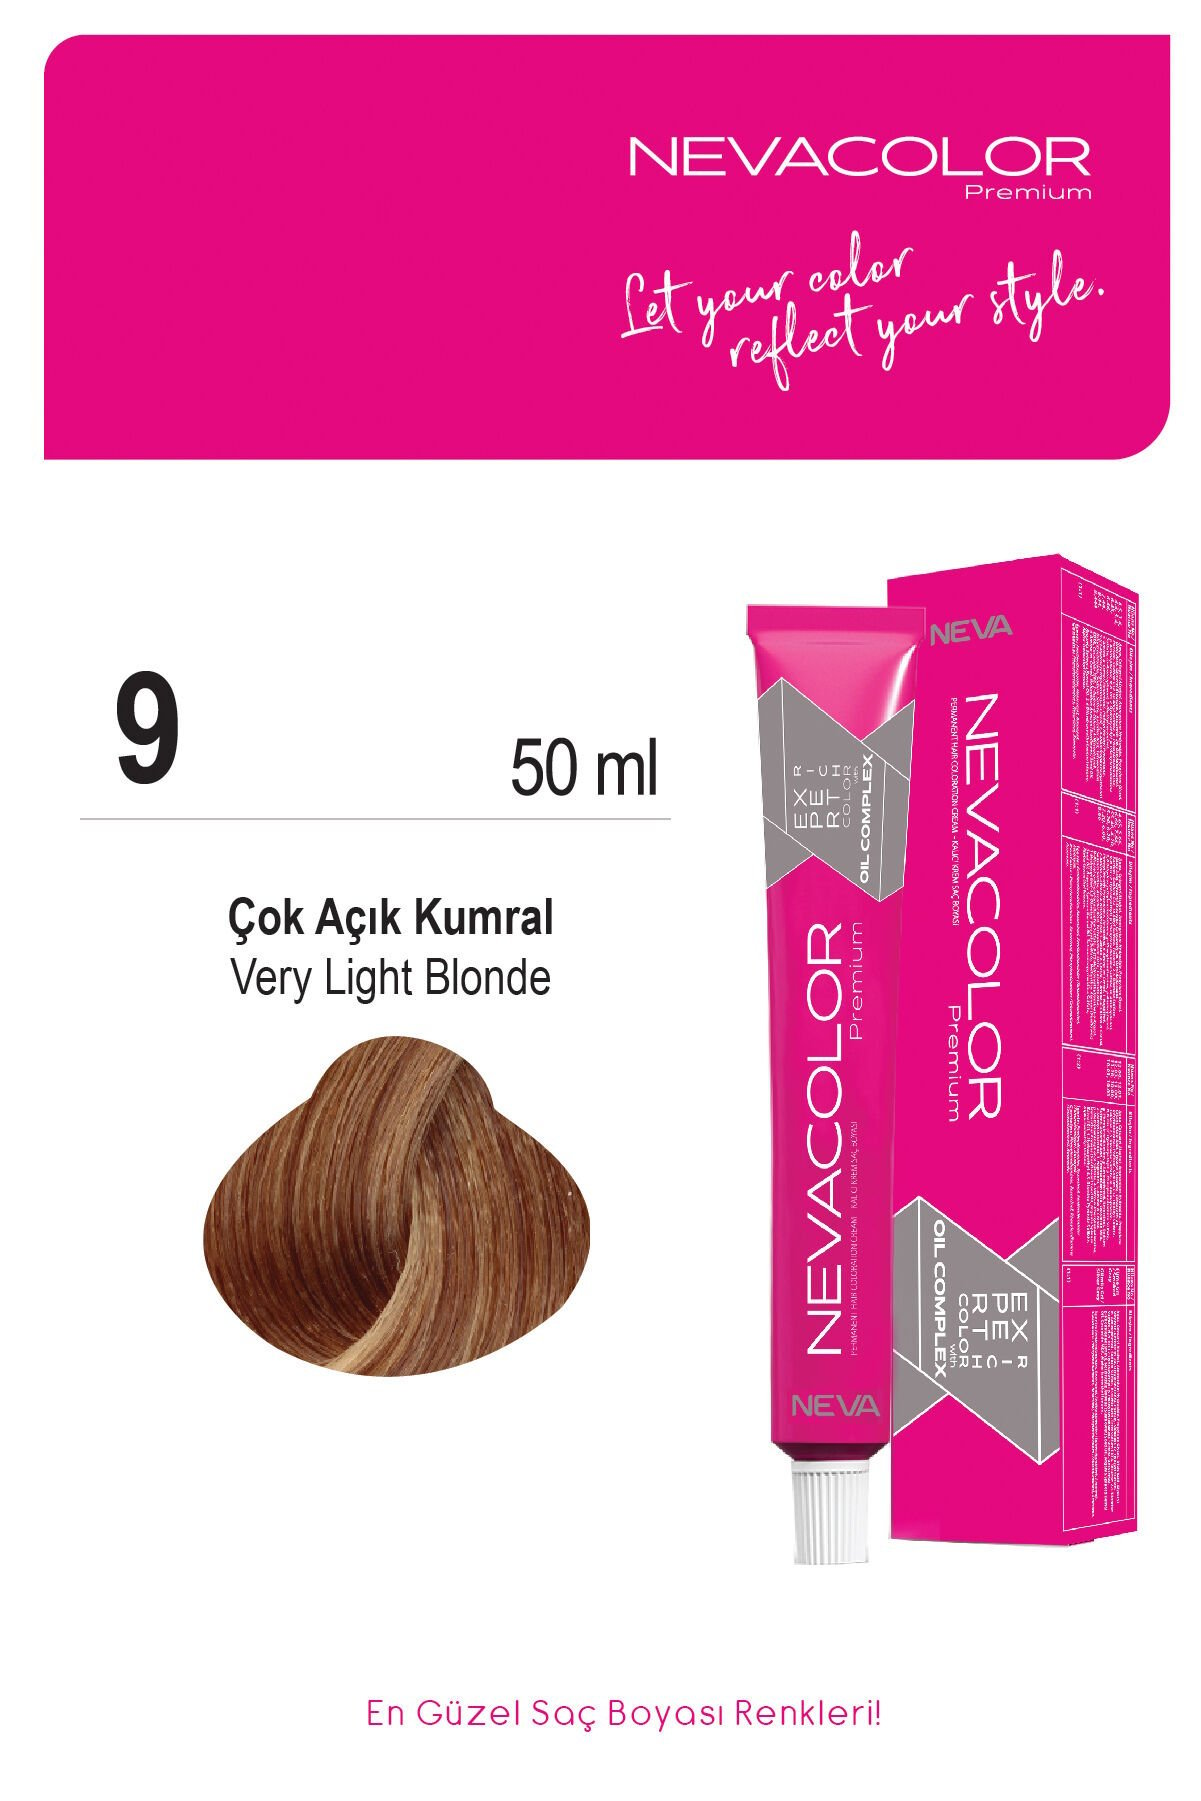 Nevacolor Premium 9. Çok Açık Kumral - Kalıcı Krem Saç Boyası 50 g Tüp